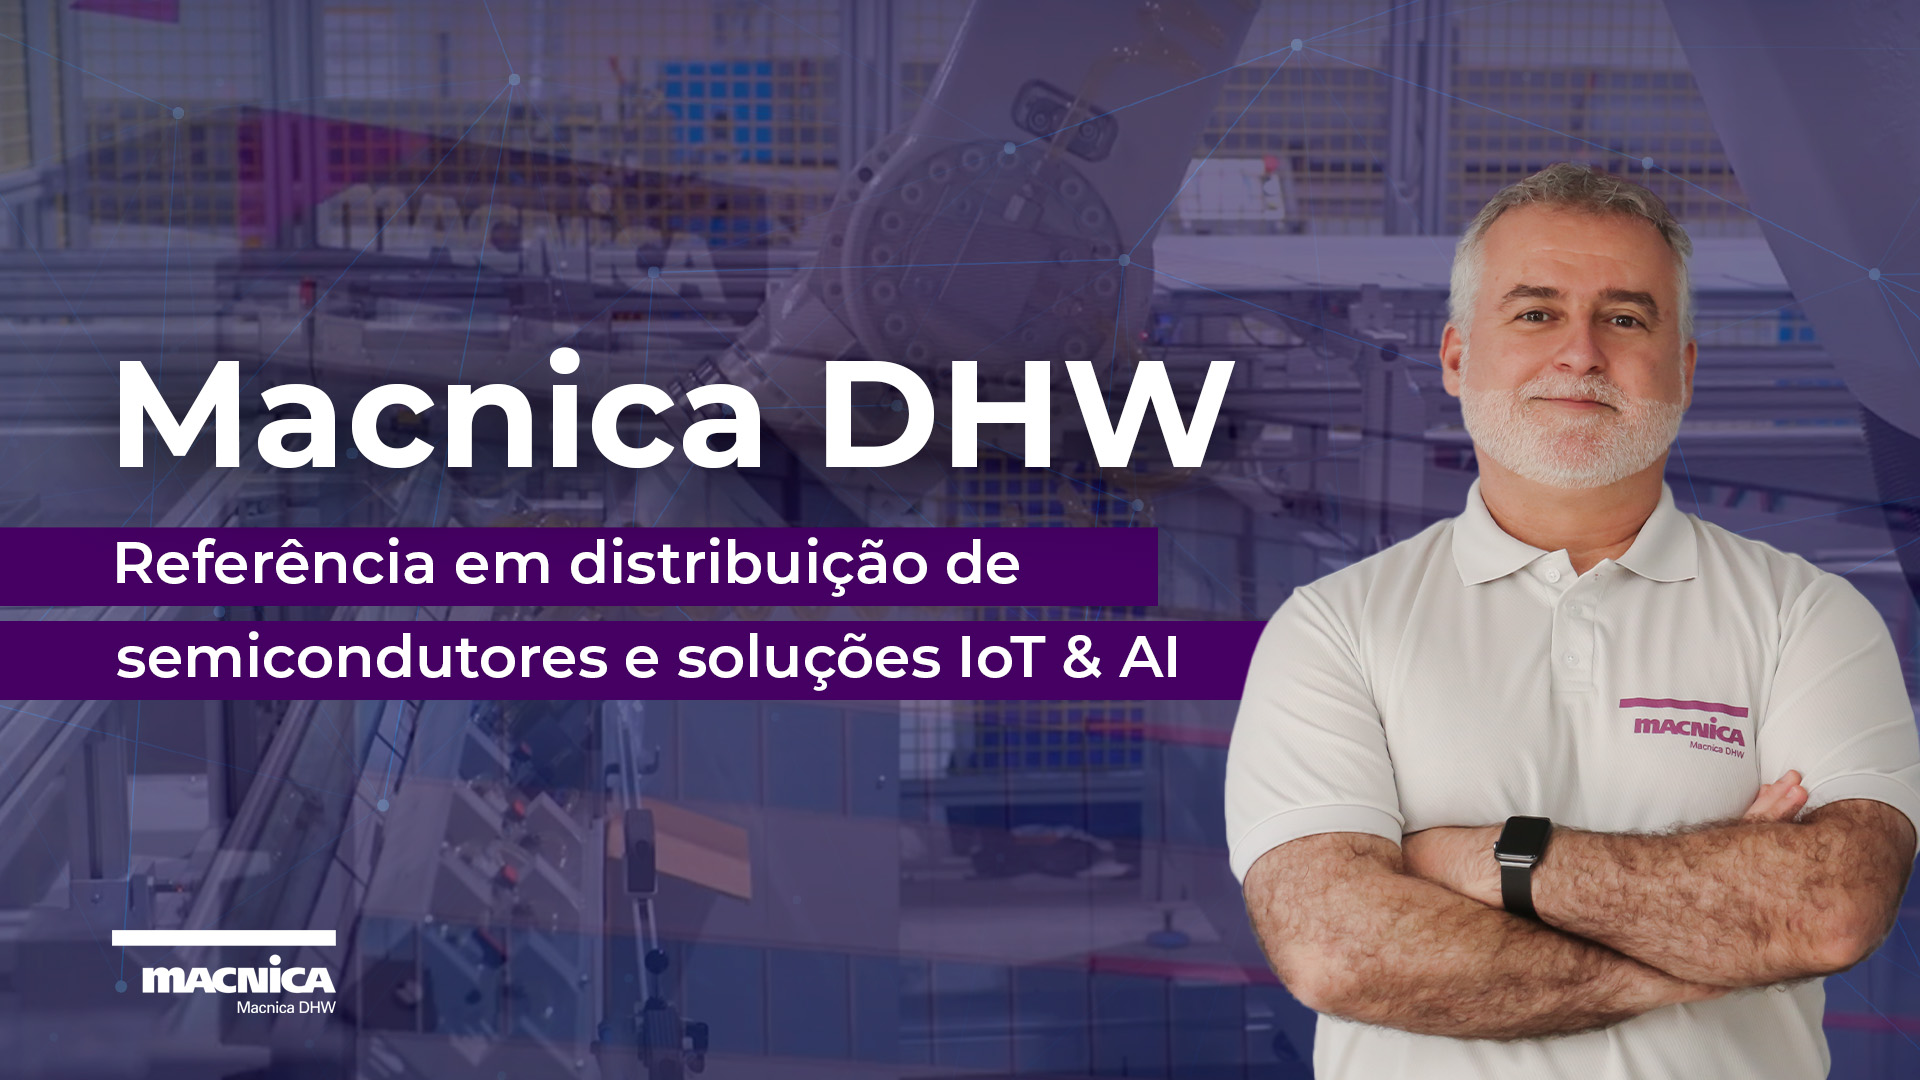 Você está visualizando atualmente Macnica DHW: Referência em distribuição de semicondutores e soluções IoT & AI